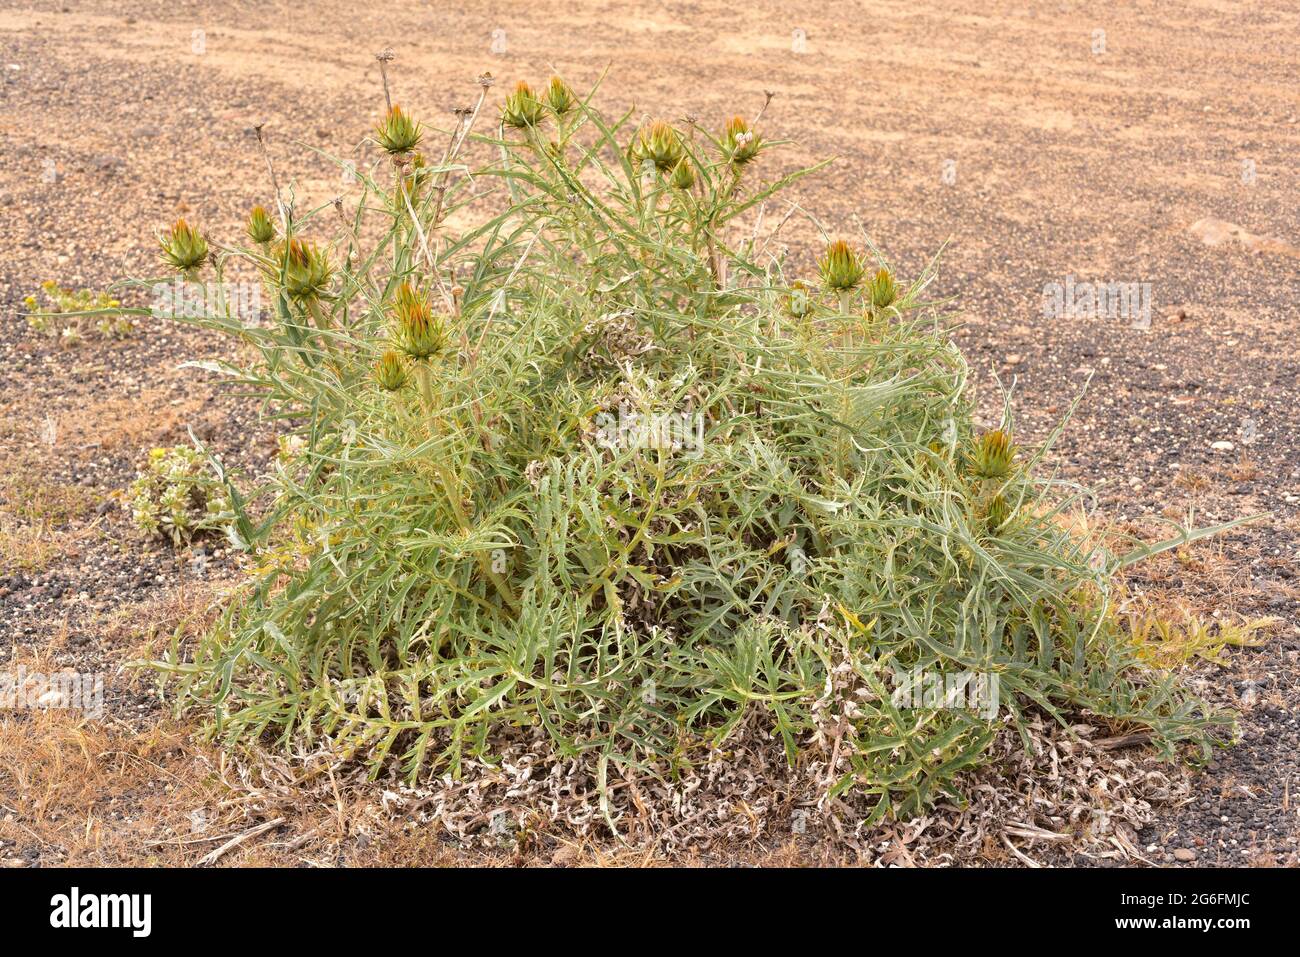 Le cardoon sauvage (Cynara cardunculus) est une plante herbacée vivace. Cette photo a été prise à l'île de Lanzarote, aux îles Canaries, en Espagne. Banque D'Images